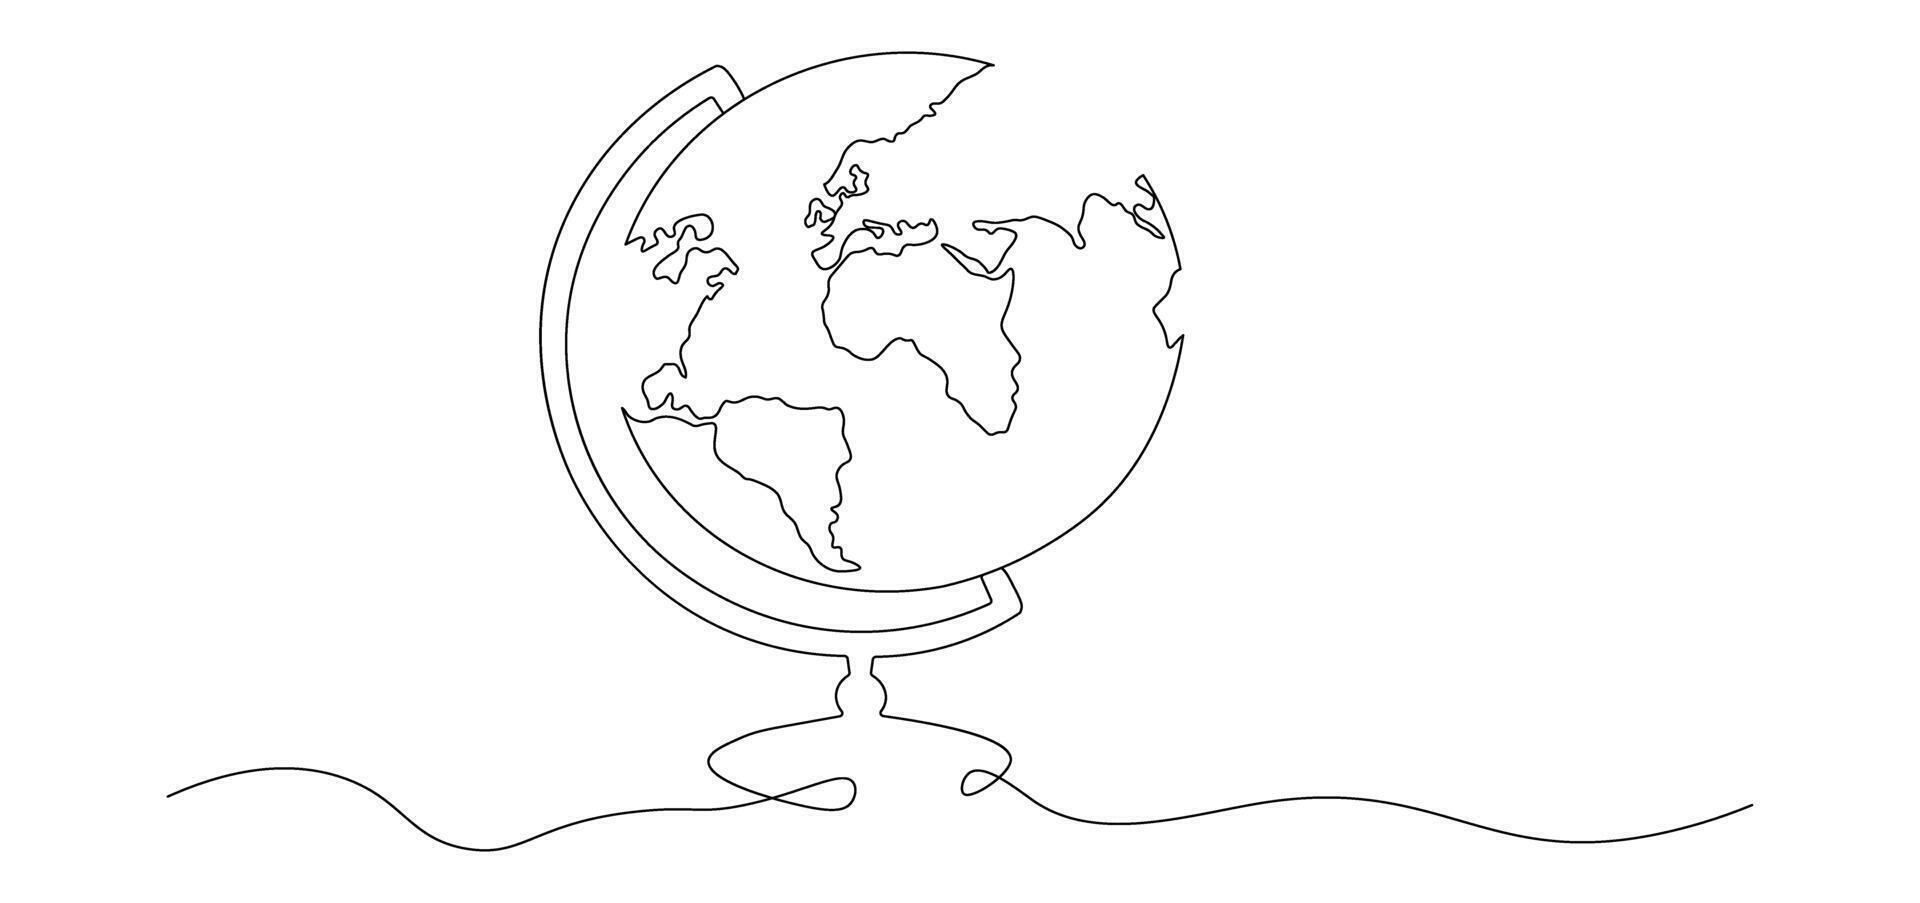 uno continuo linea disegno di scuola globo.mondo carta geografica scarabocchio linea disegno. terra carta geografica mano disegnato simbolo vettore